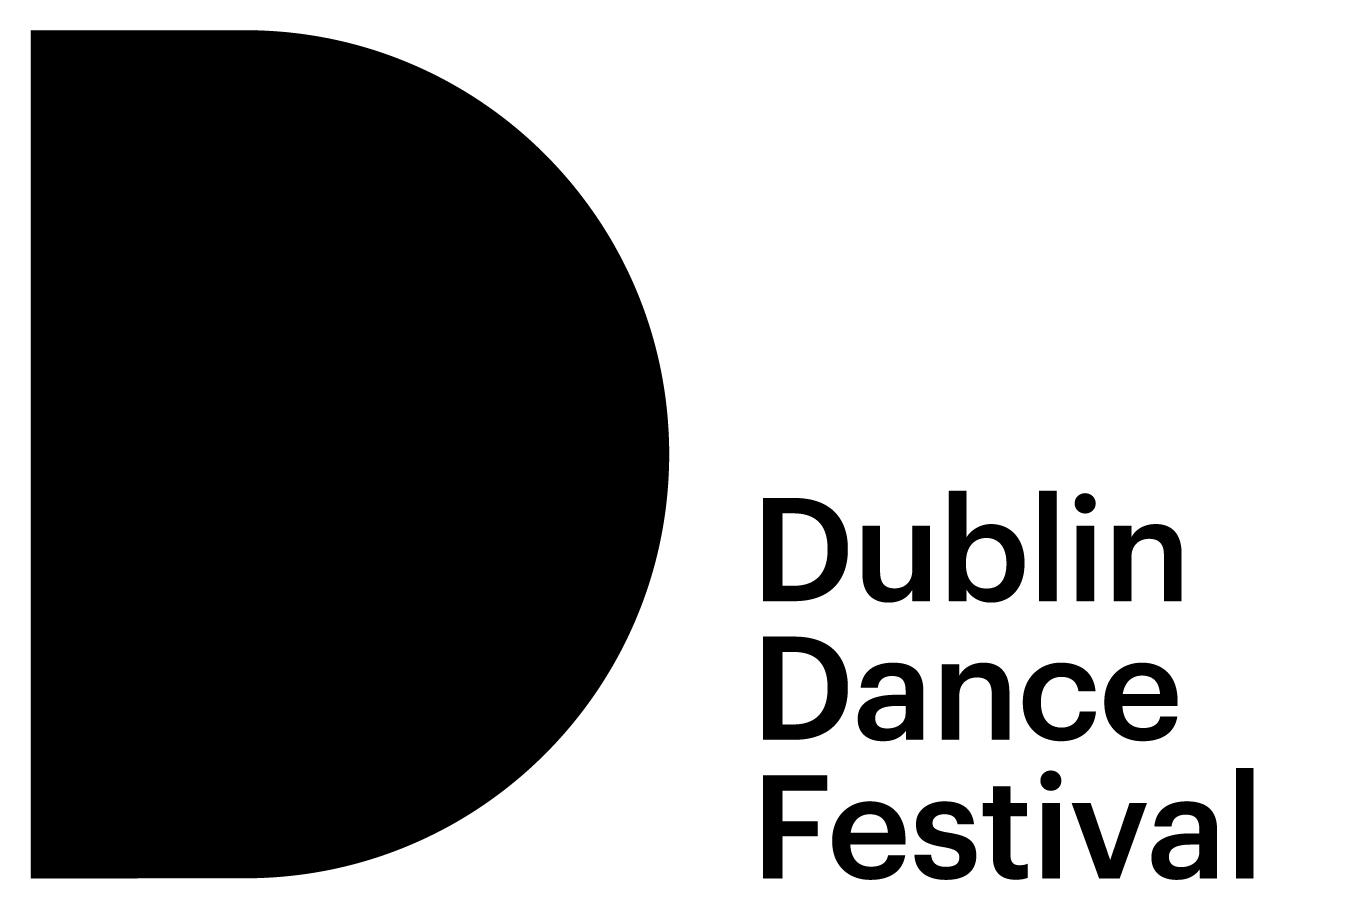 Dublin Dance Festival logo